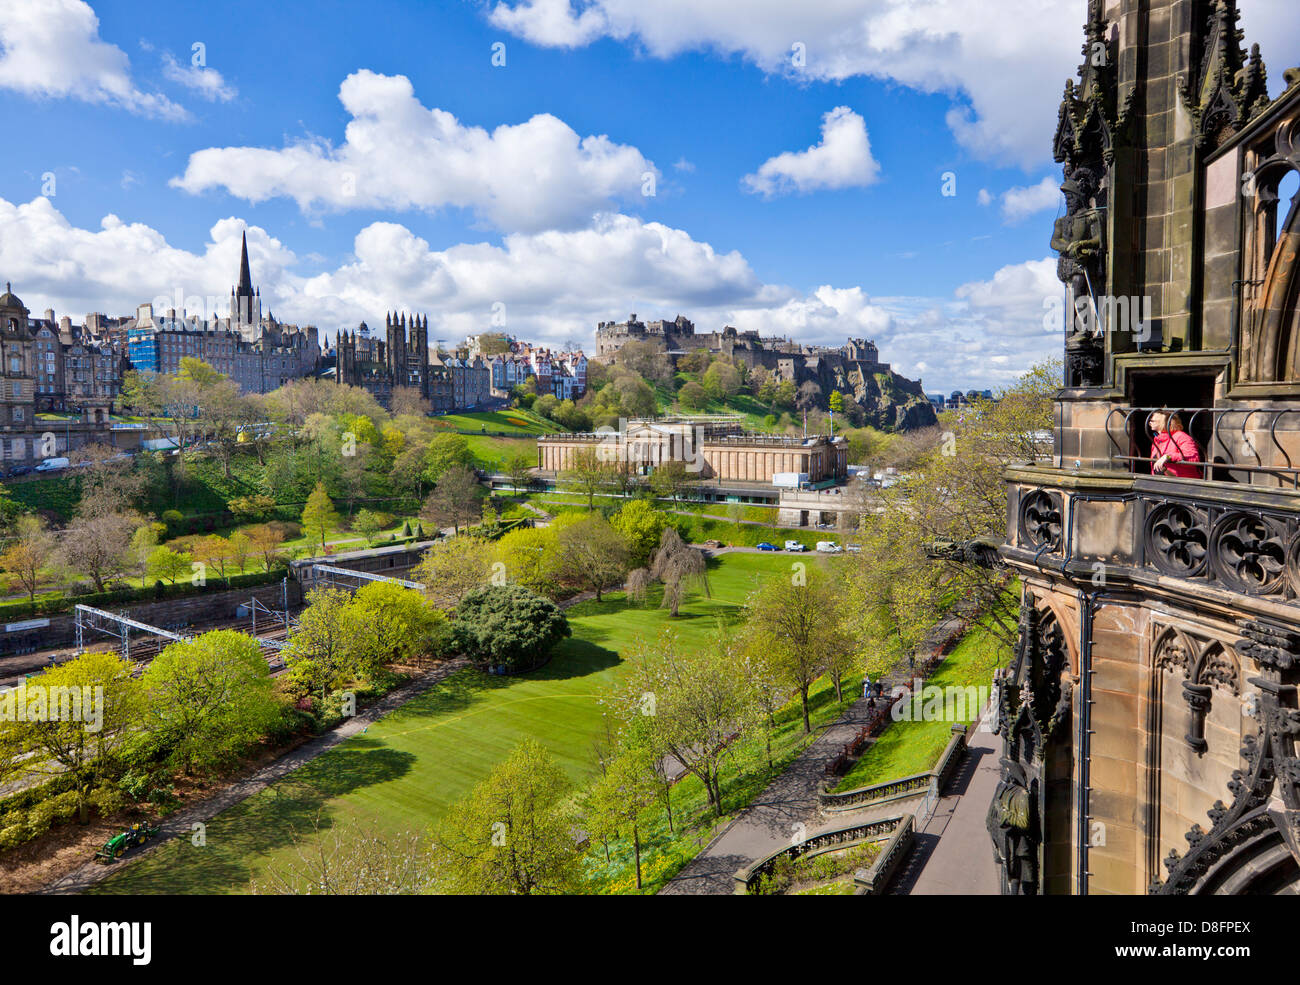 Blick auf Edinburgh Castle und Gärten in der Innenstadt von Scott Monument Edinburgh Midlothian Schottland Großbritannien GB EU Europa Stockfoto